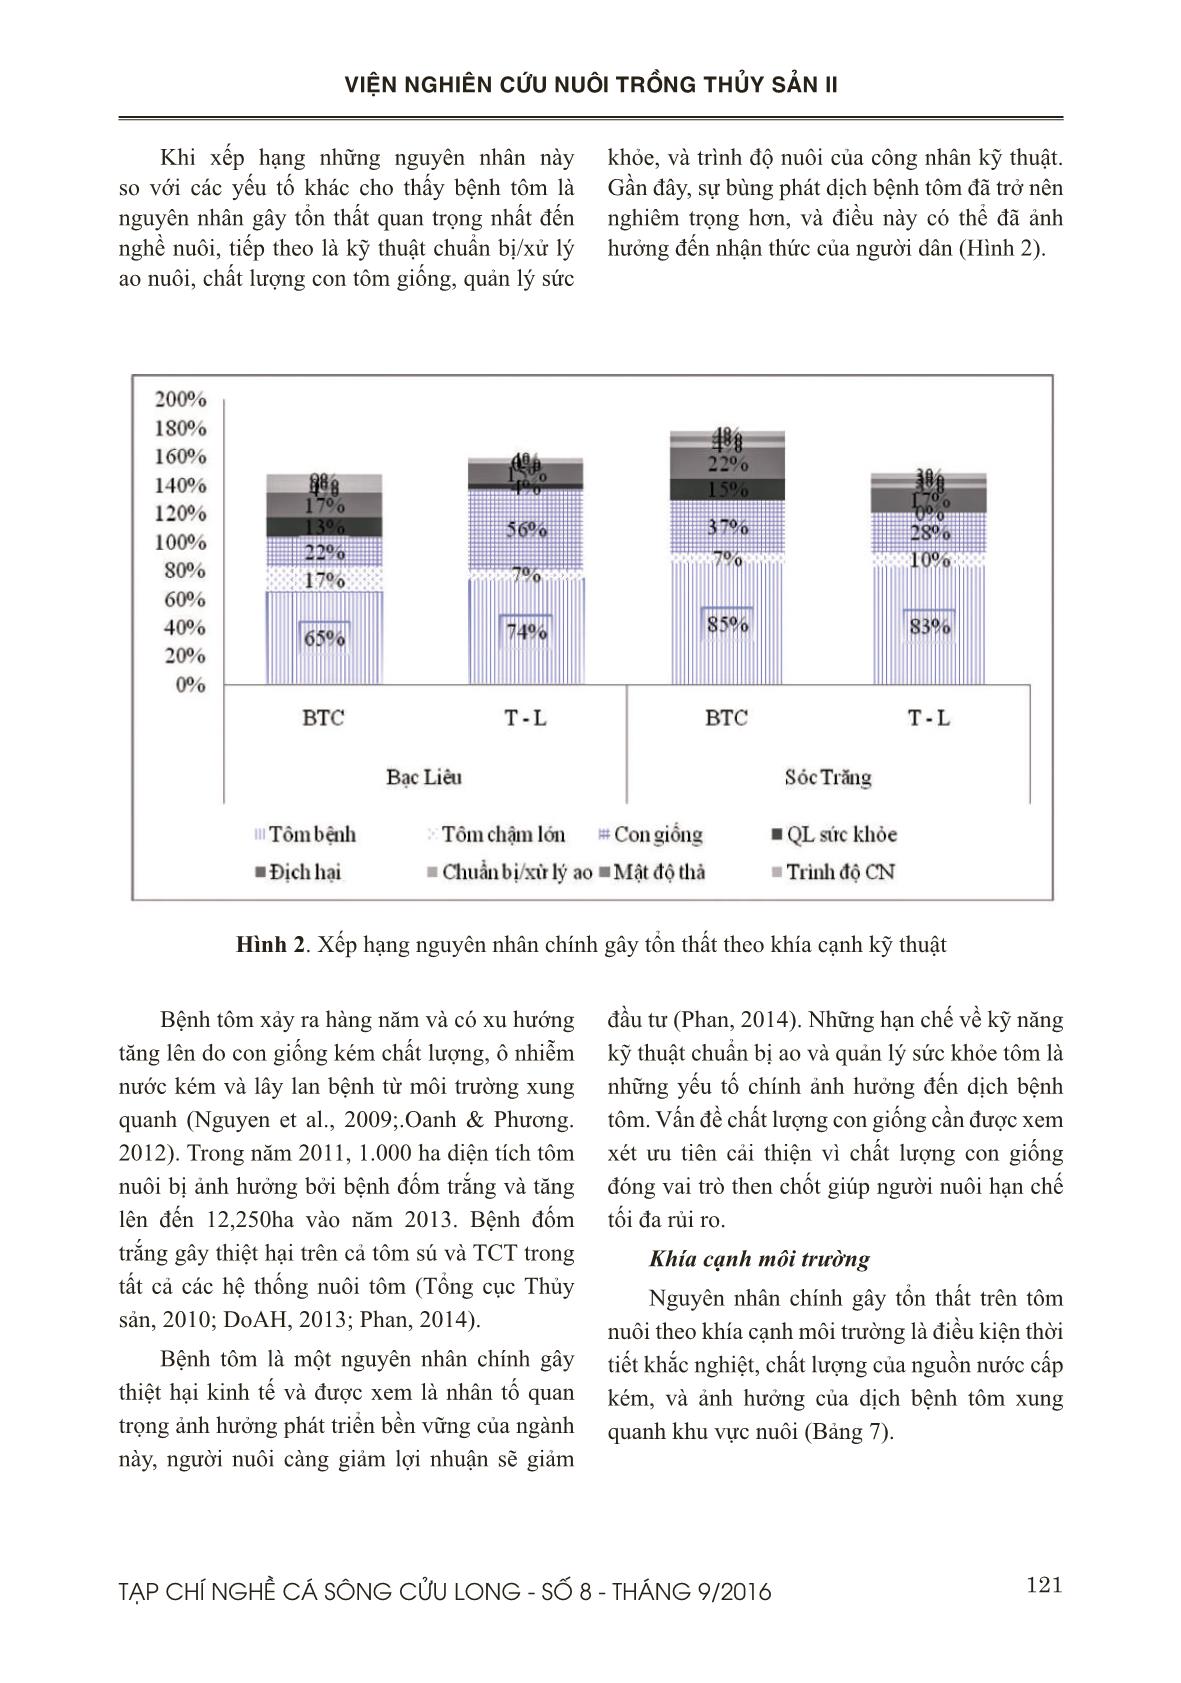 Đánh giá tác động về kinh tế xã hội của việc nuôi tôm thất bại đối với mô hình tôm lúa và bán thâm canh quy mô nhỏ ở Sóc Trăng và Bạc Liêu trang 8